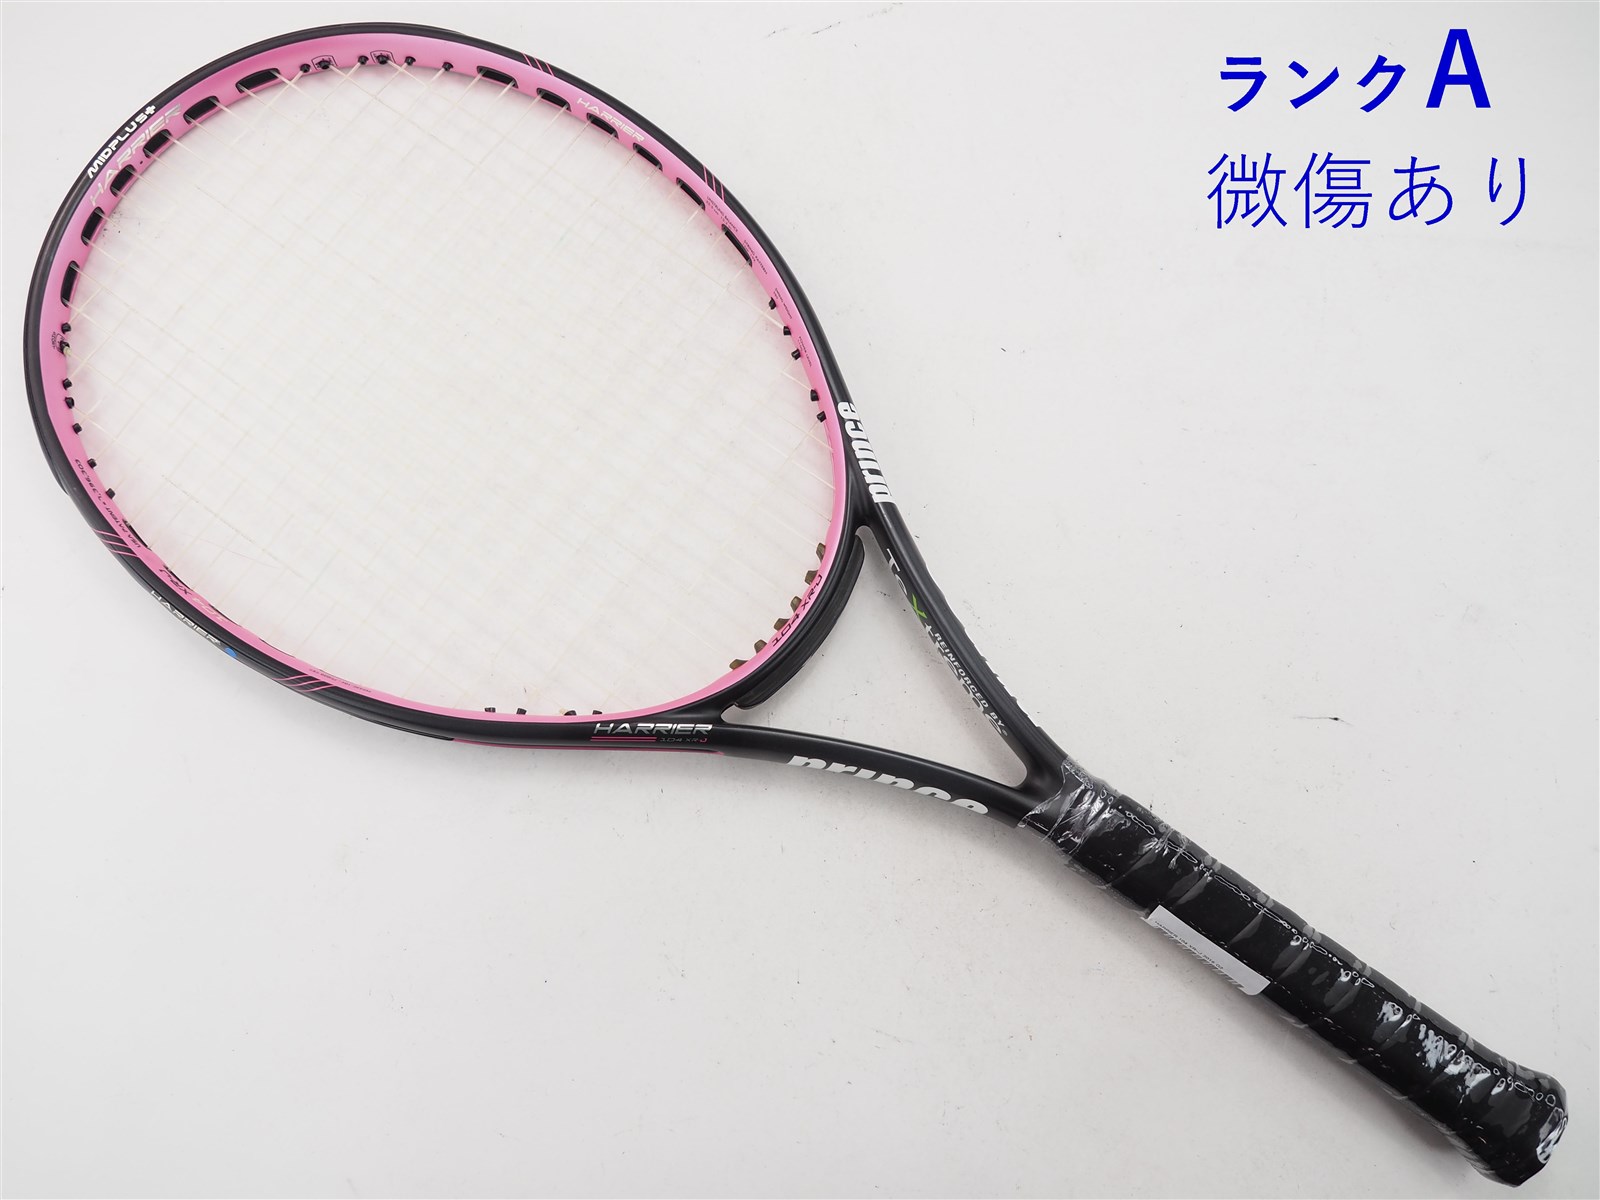 硬式テニスラケット Prince プリンス HARRIER PRO 107 XR グリップ ...